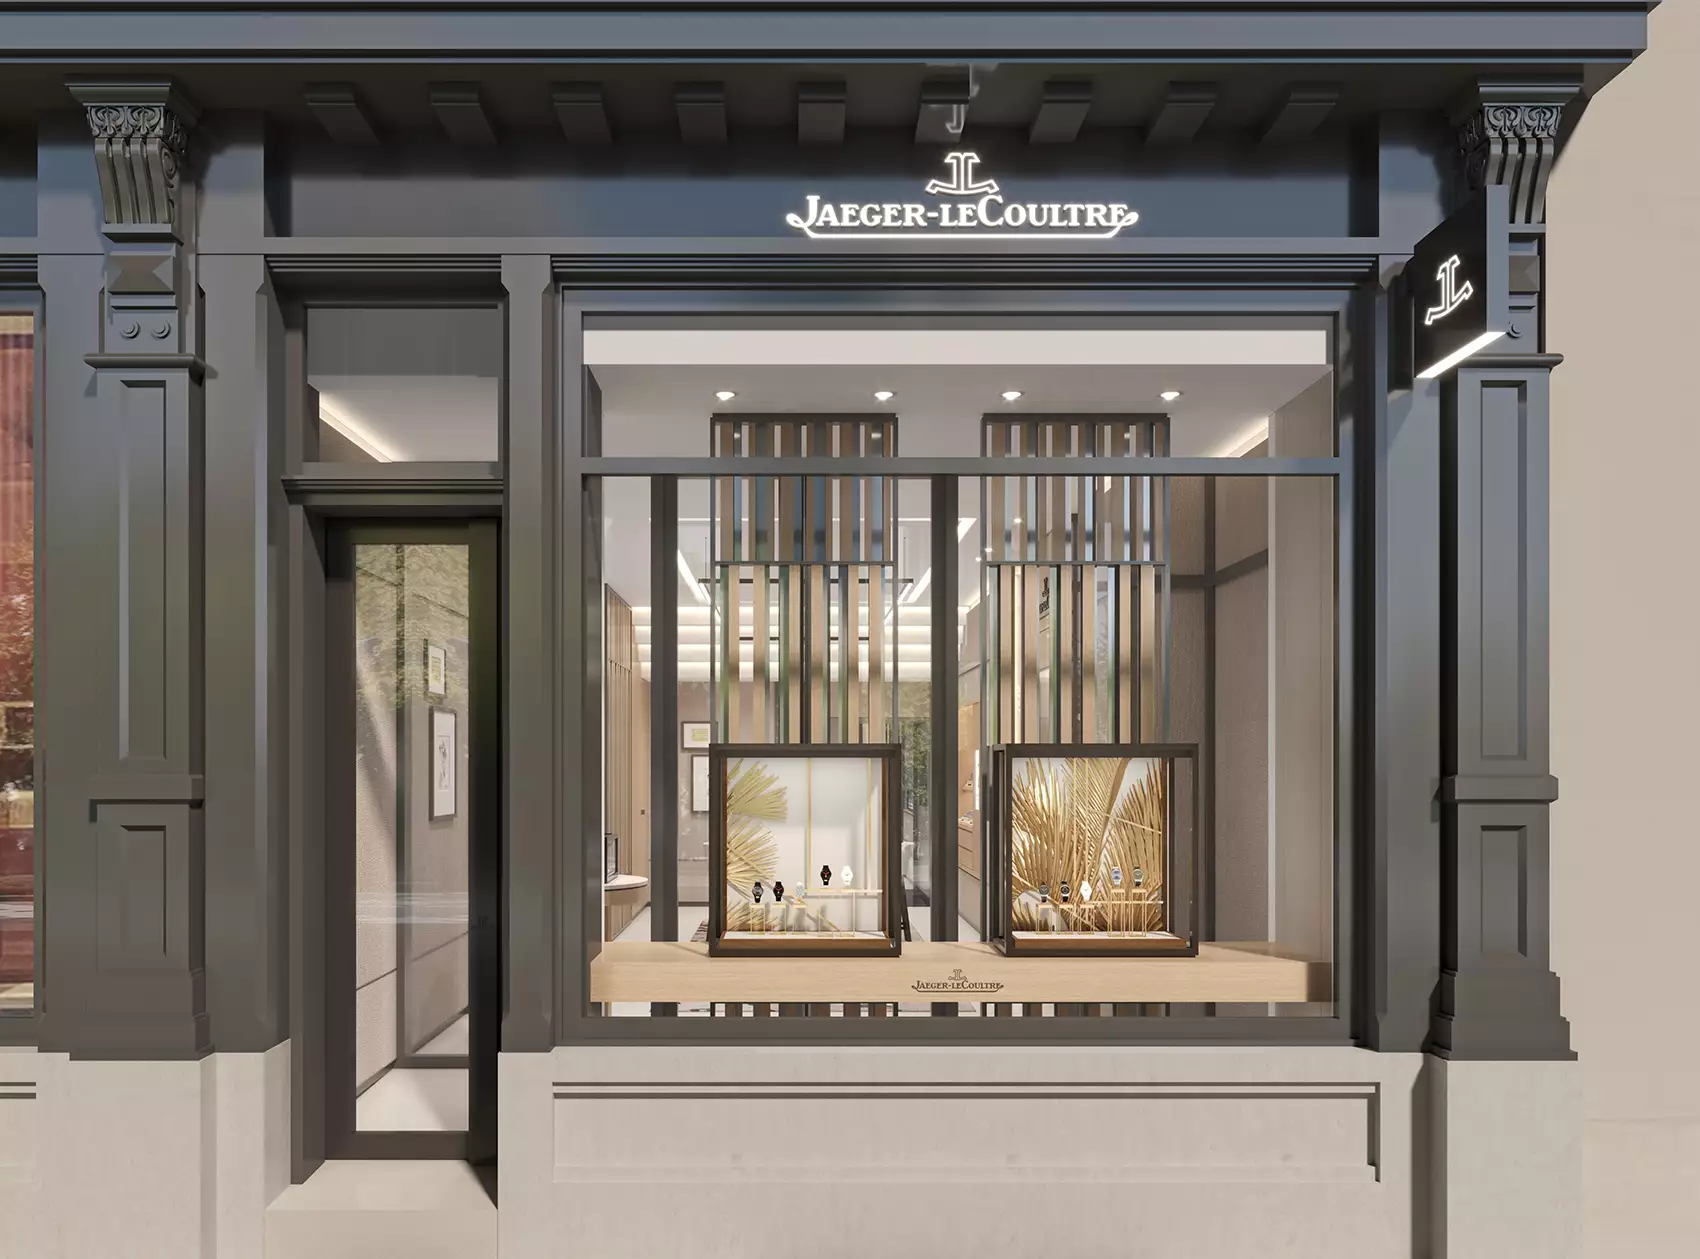 Jaeger-LeCoultre inaugure une nouvelle boutique au cœur d'Anvers